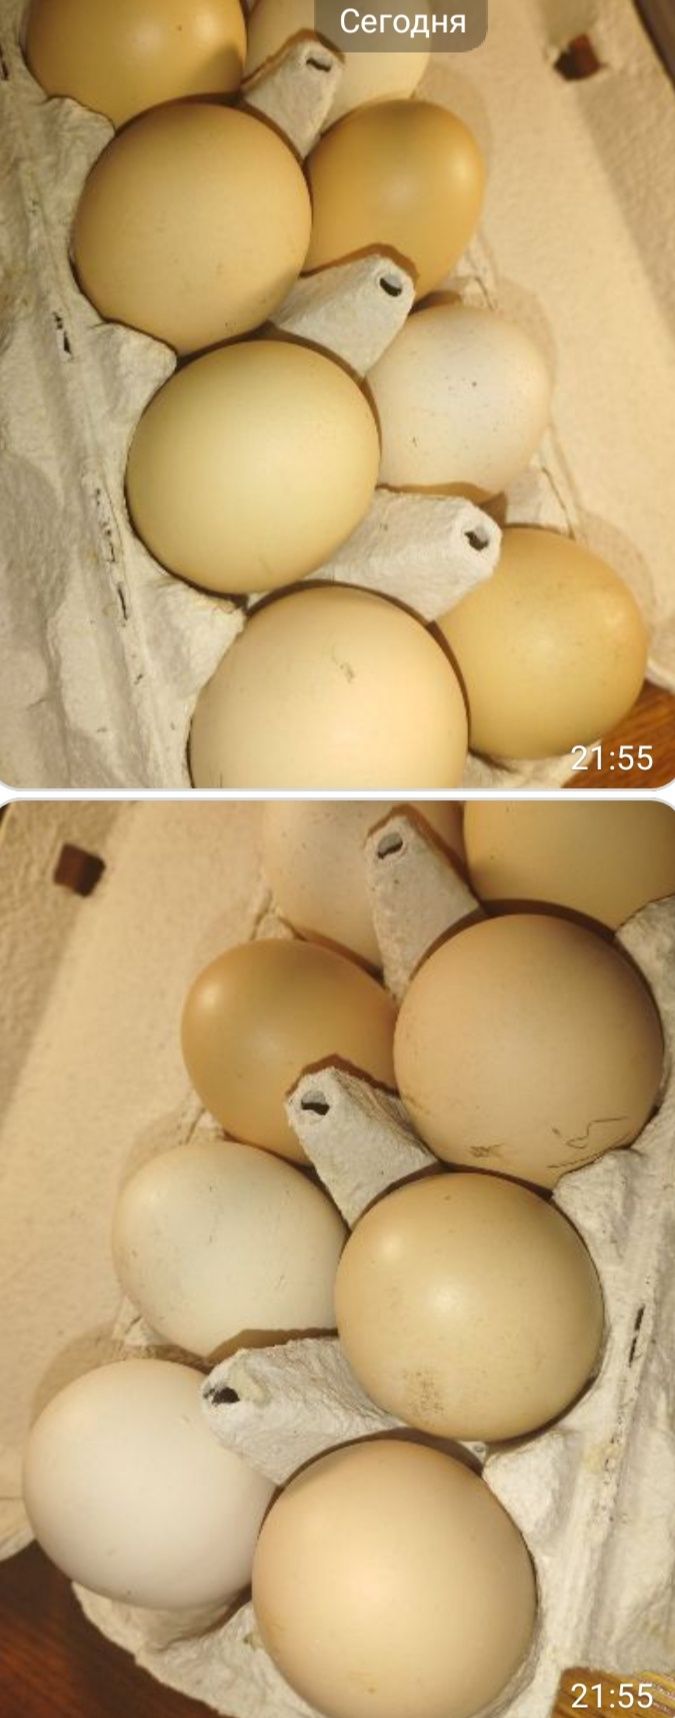 Кури юрловські голосисті. Інкубаційне яйце